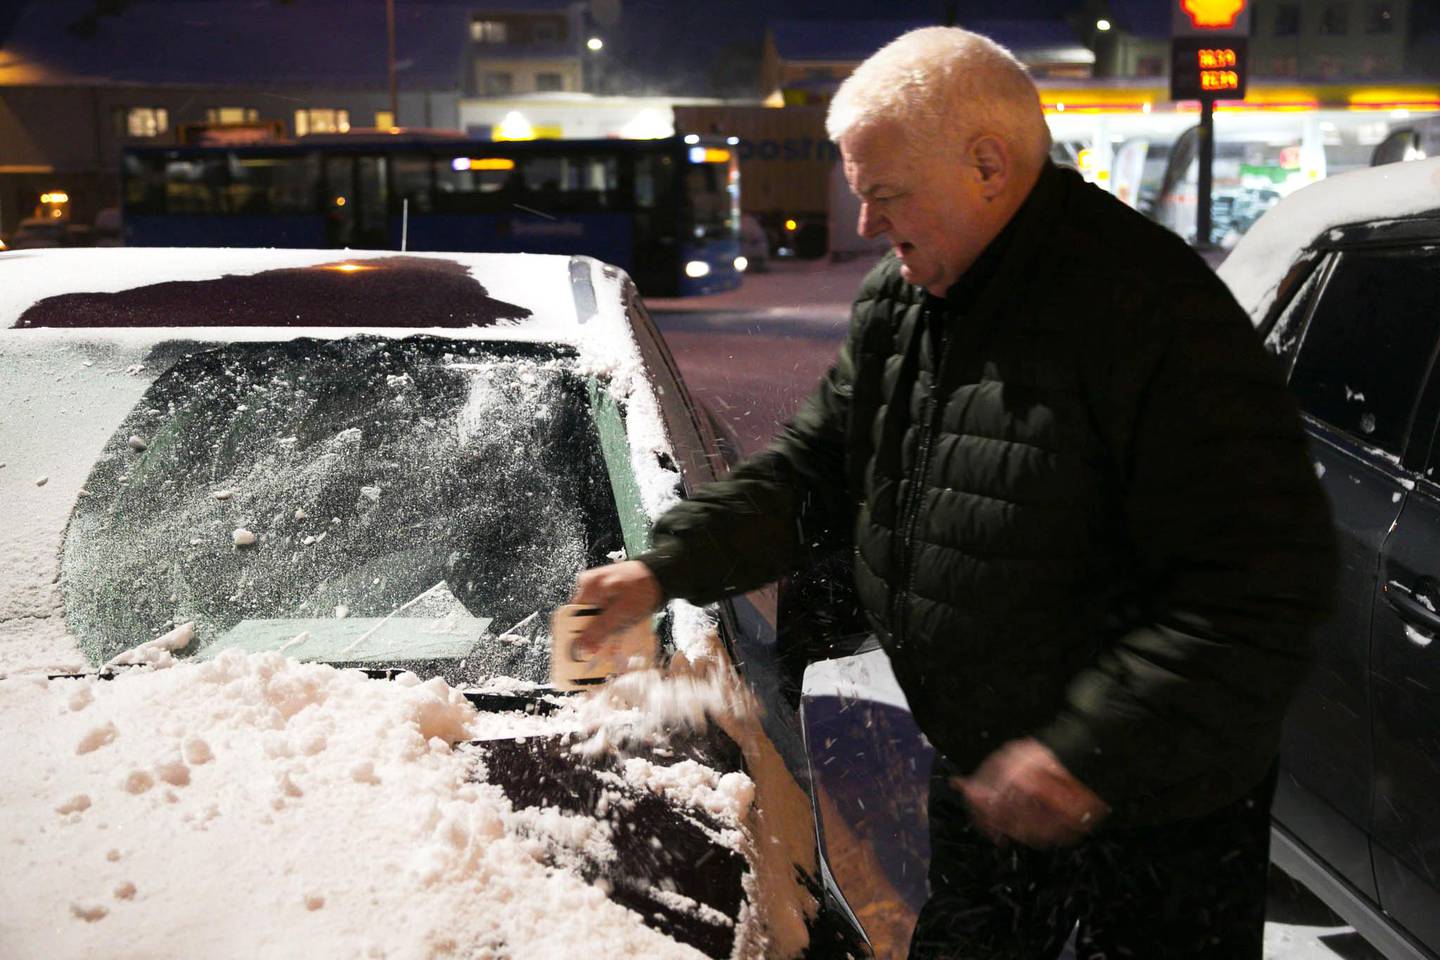 HVERDAGEN: Frode Berg skraper snø og is av bilen. - Det er godt å være tilbake i hverdagen igjen, sier han.